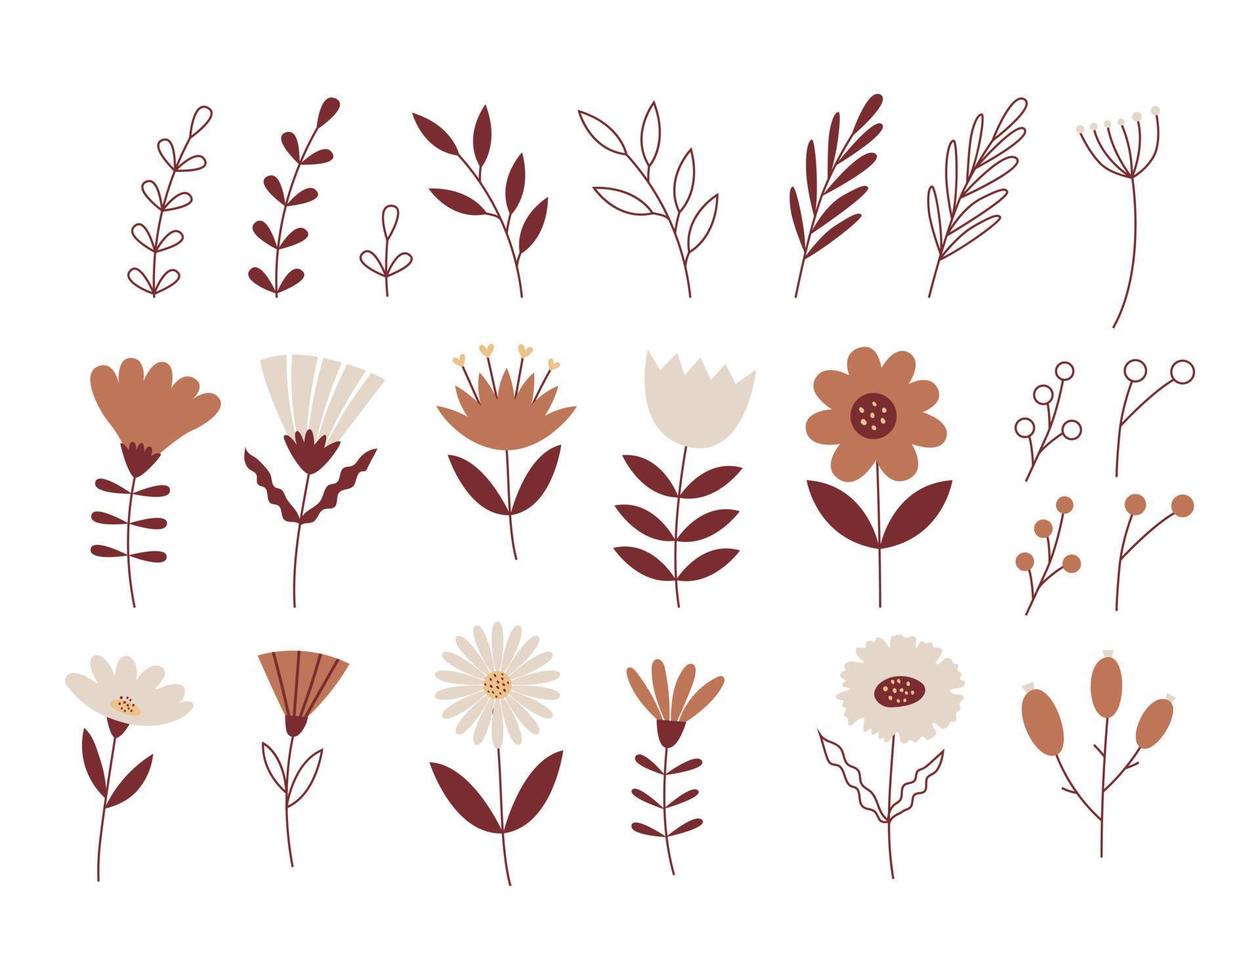 eine Reihe einfacher Blumen, Zweige, Blätter. neutrale beige farben. botanische Vektorgrafiken einzeln auf weißem Hintergrund. vektor